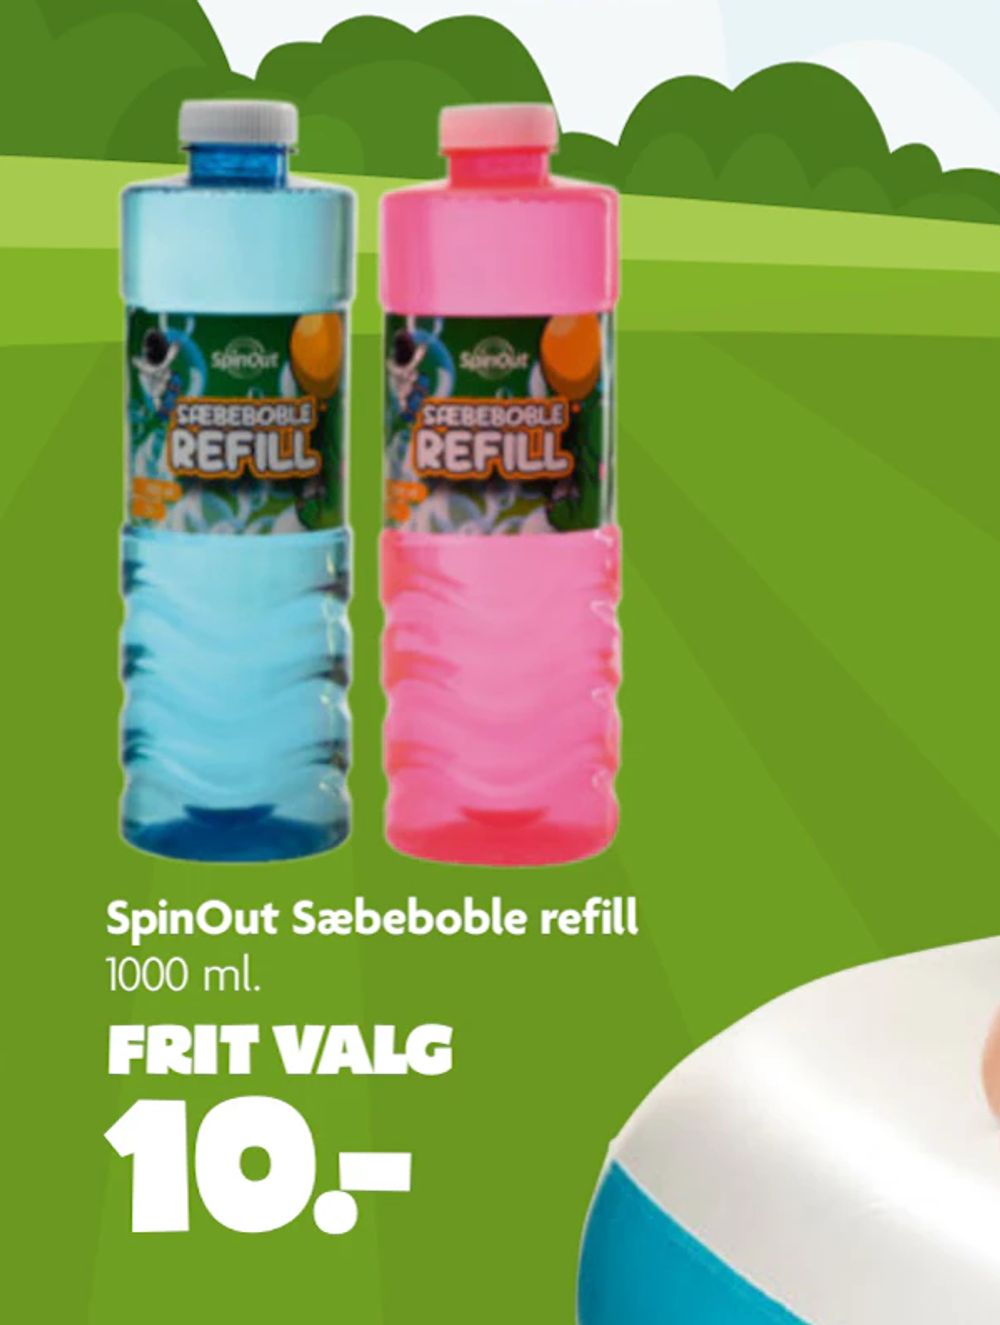 Tilbud på SpinOut Sæbeboble refill fra BR til 10 kr.